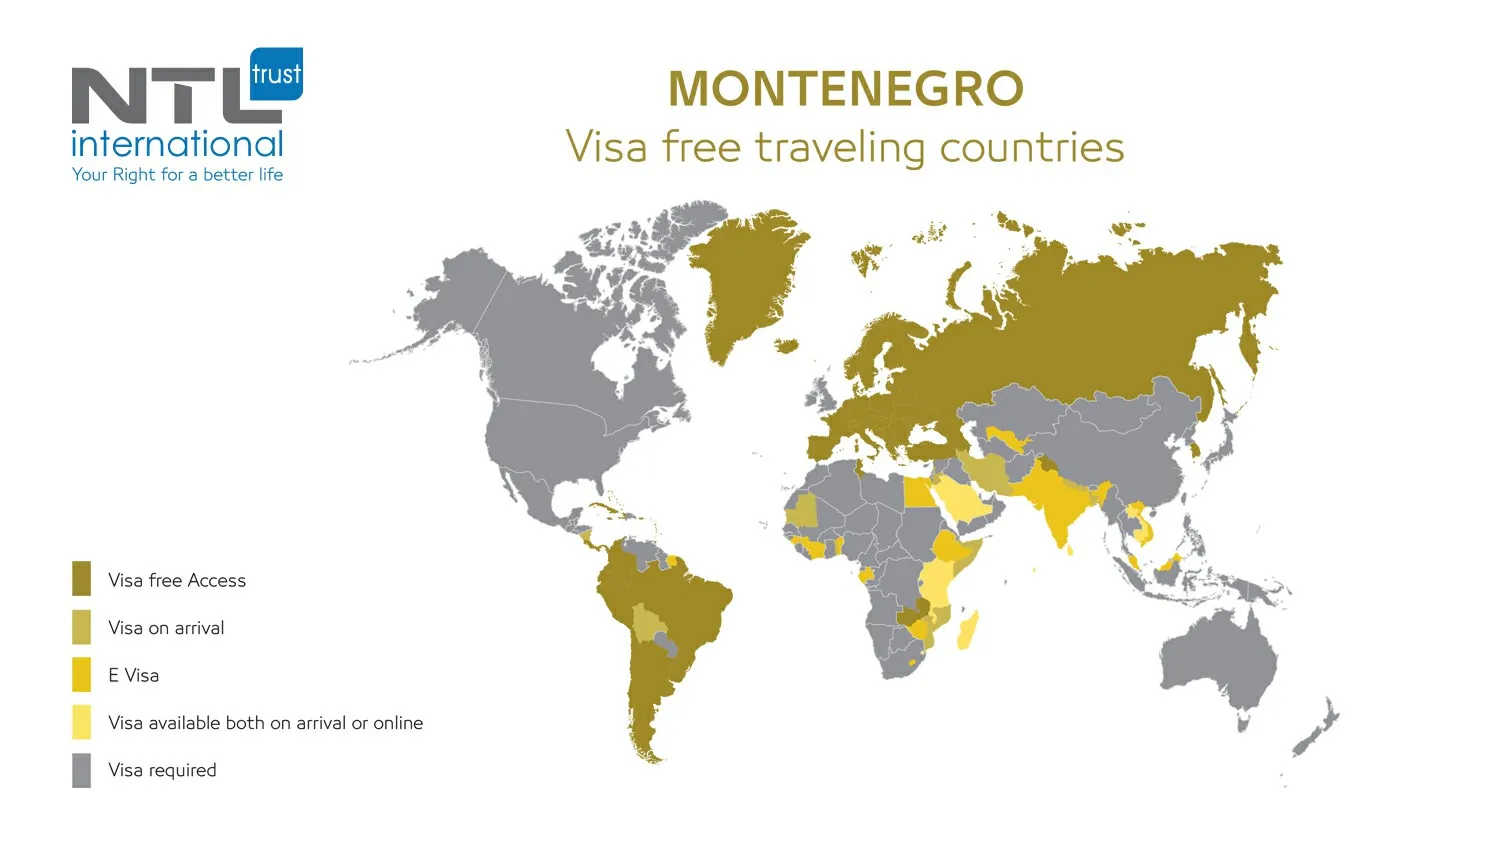 Montenegro Visa free traveling NTL